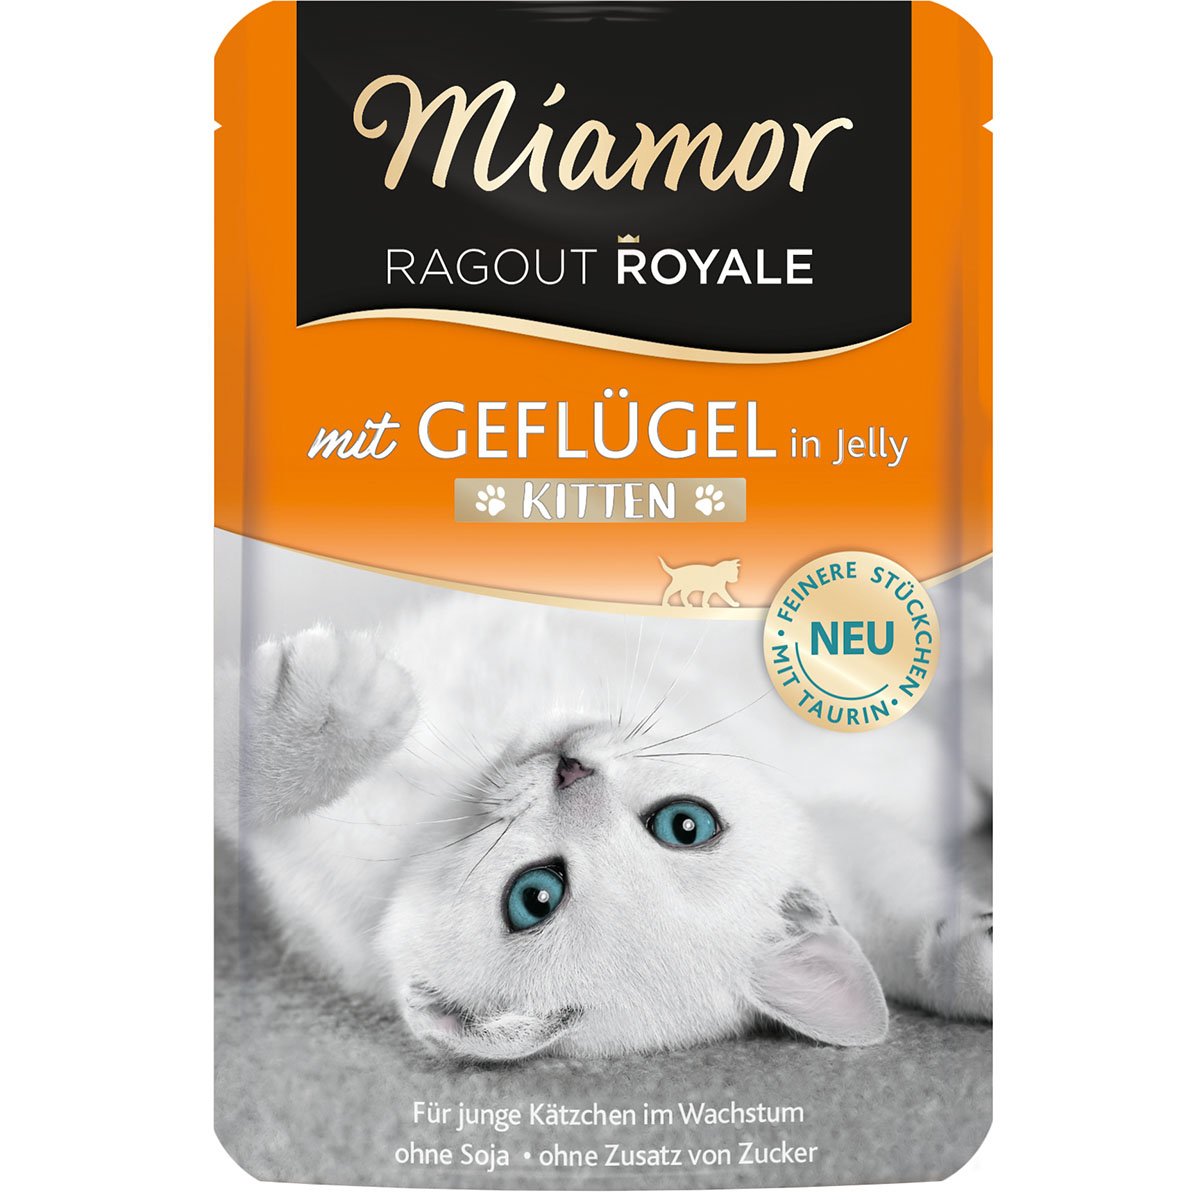 Miamor Ragout Royale Kitten Geflügel in Jelly 22x100g